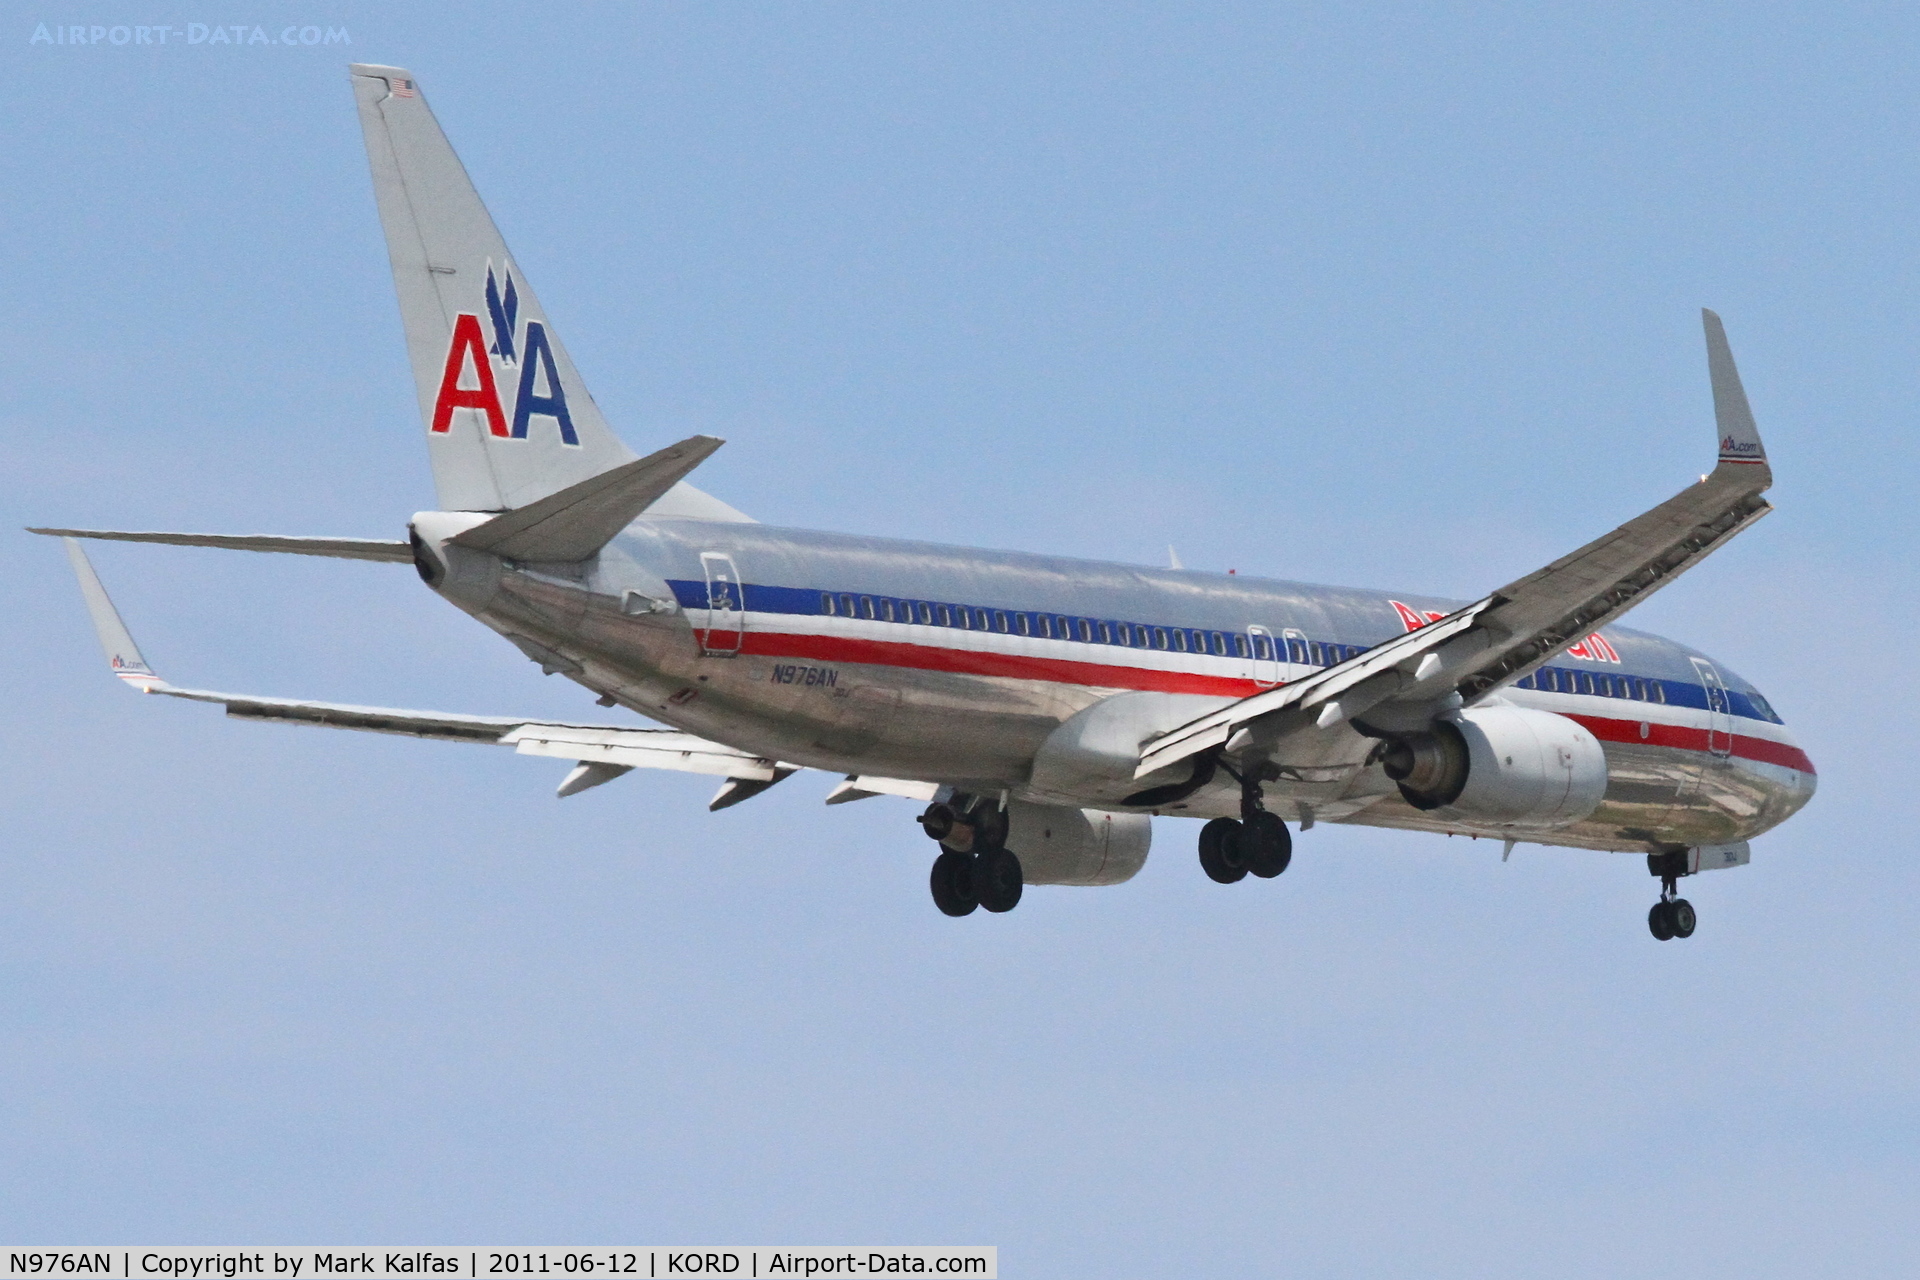 N976AN, 2001 Boeing 737-823 C/N 30099, American Airlines Boeing 737-823, AAL1760 arriving from KLAS, RWY 10 approach KORD.